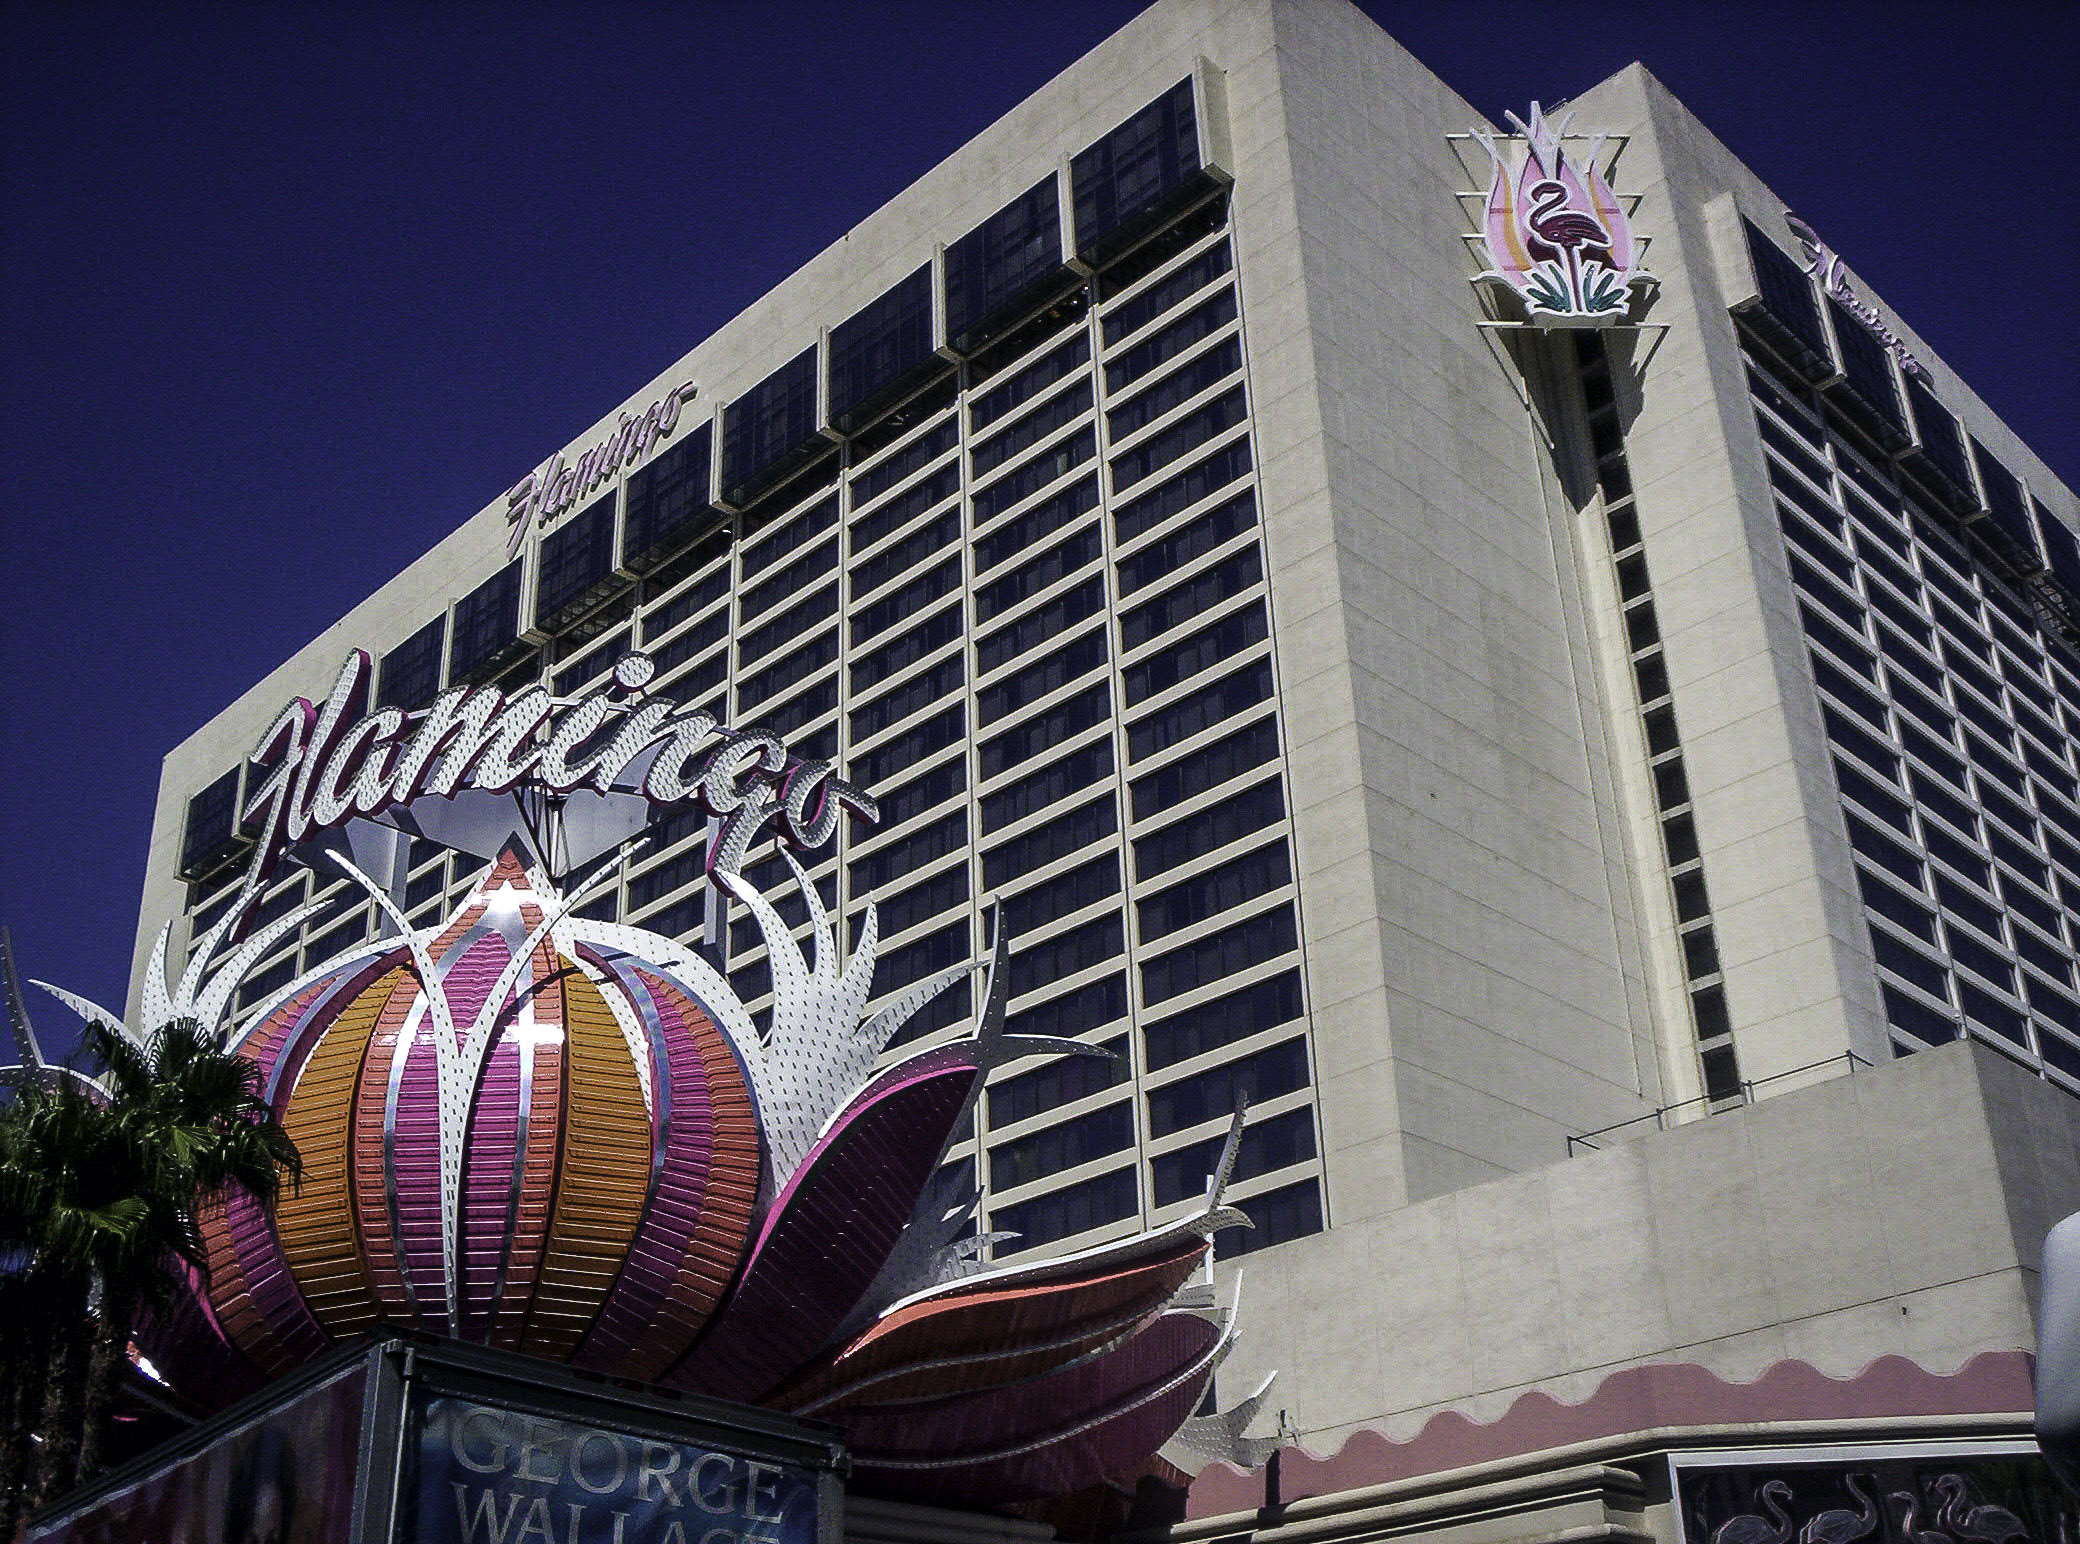 Vegas Flamingo